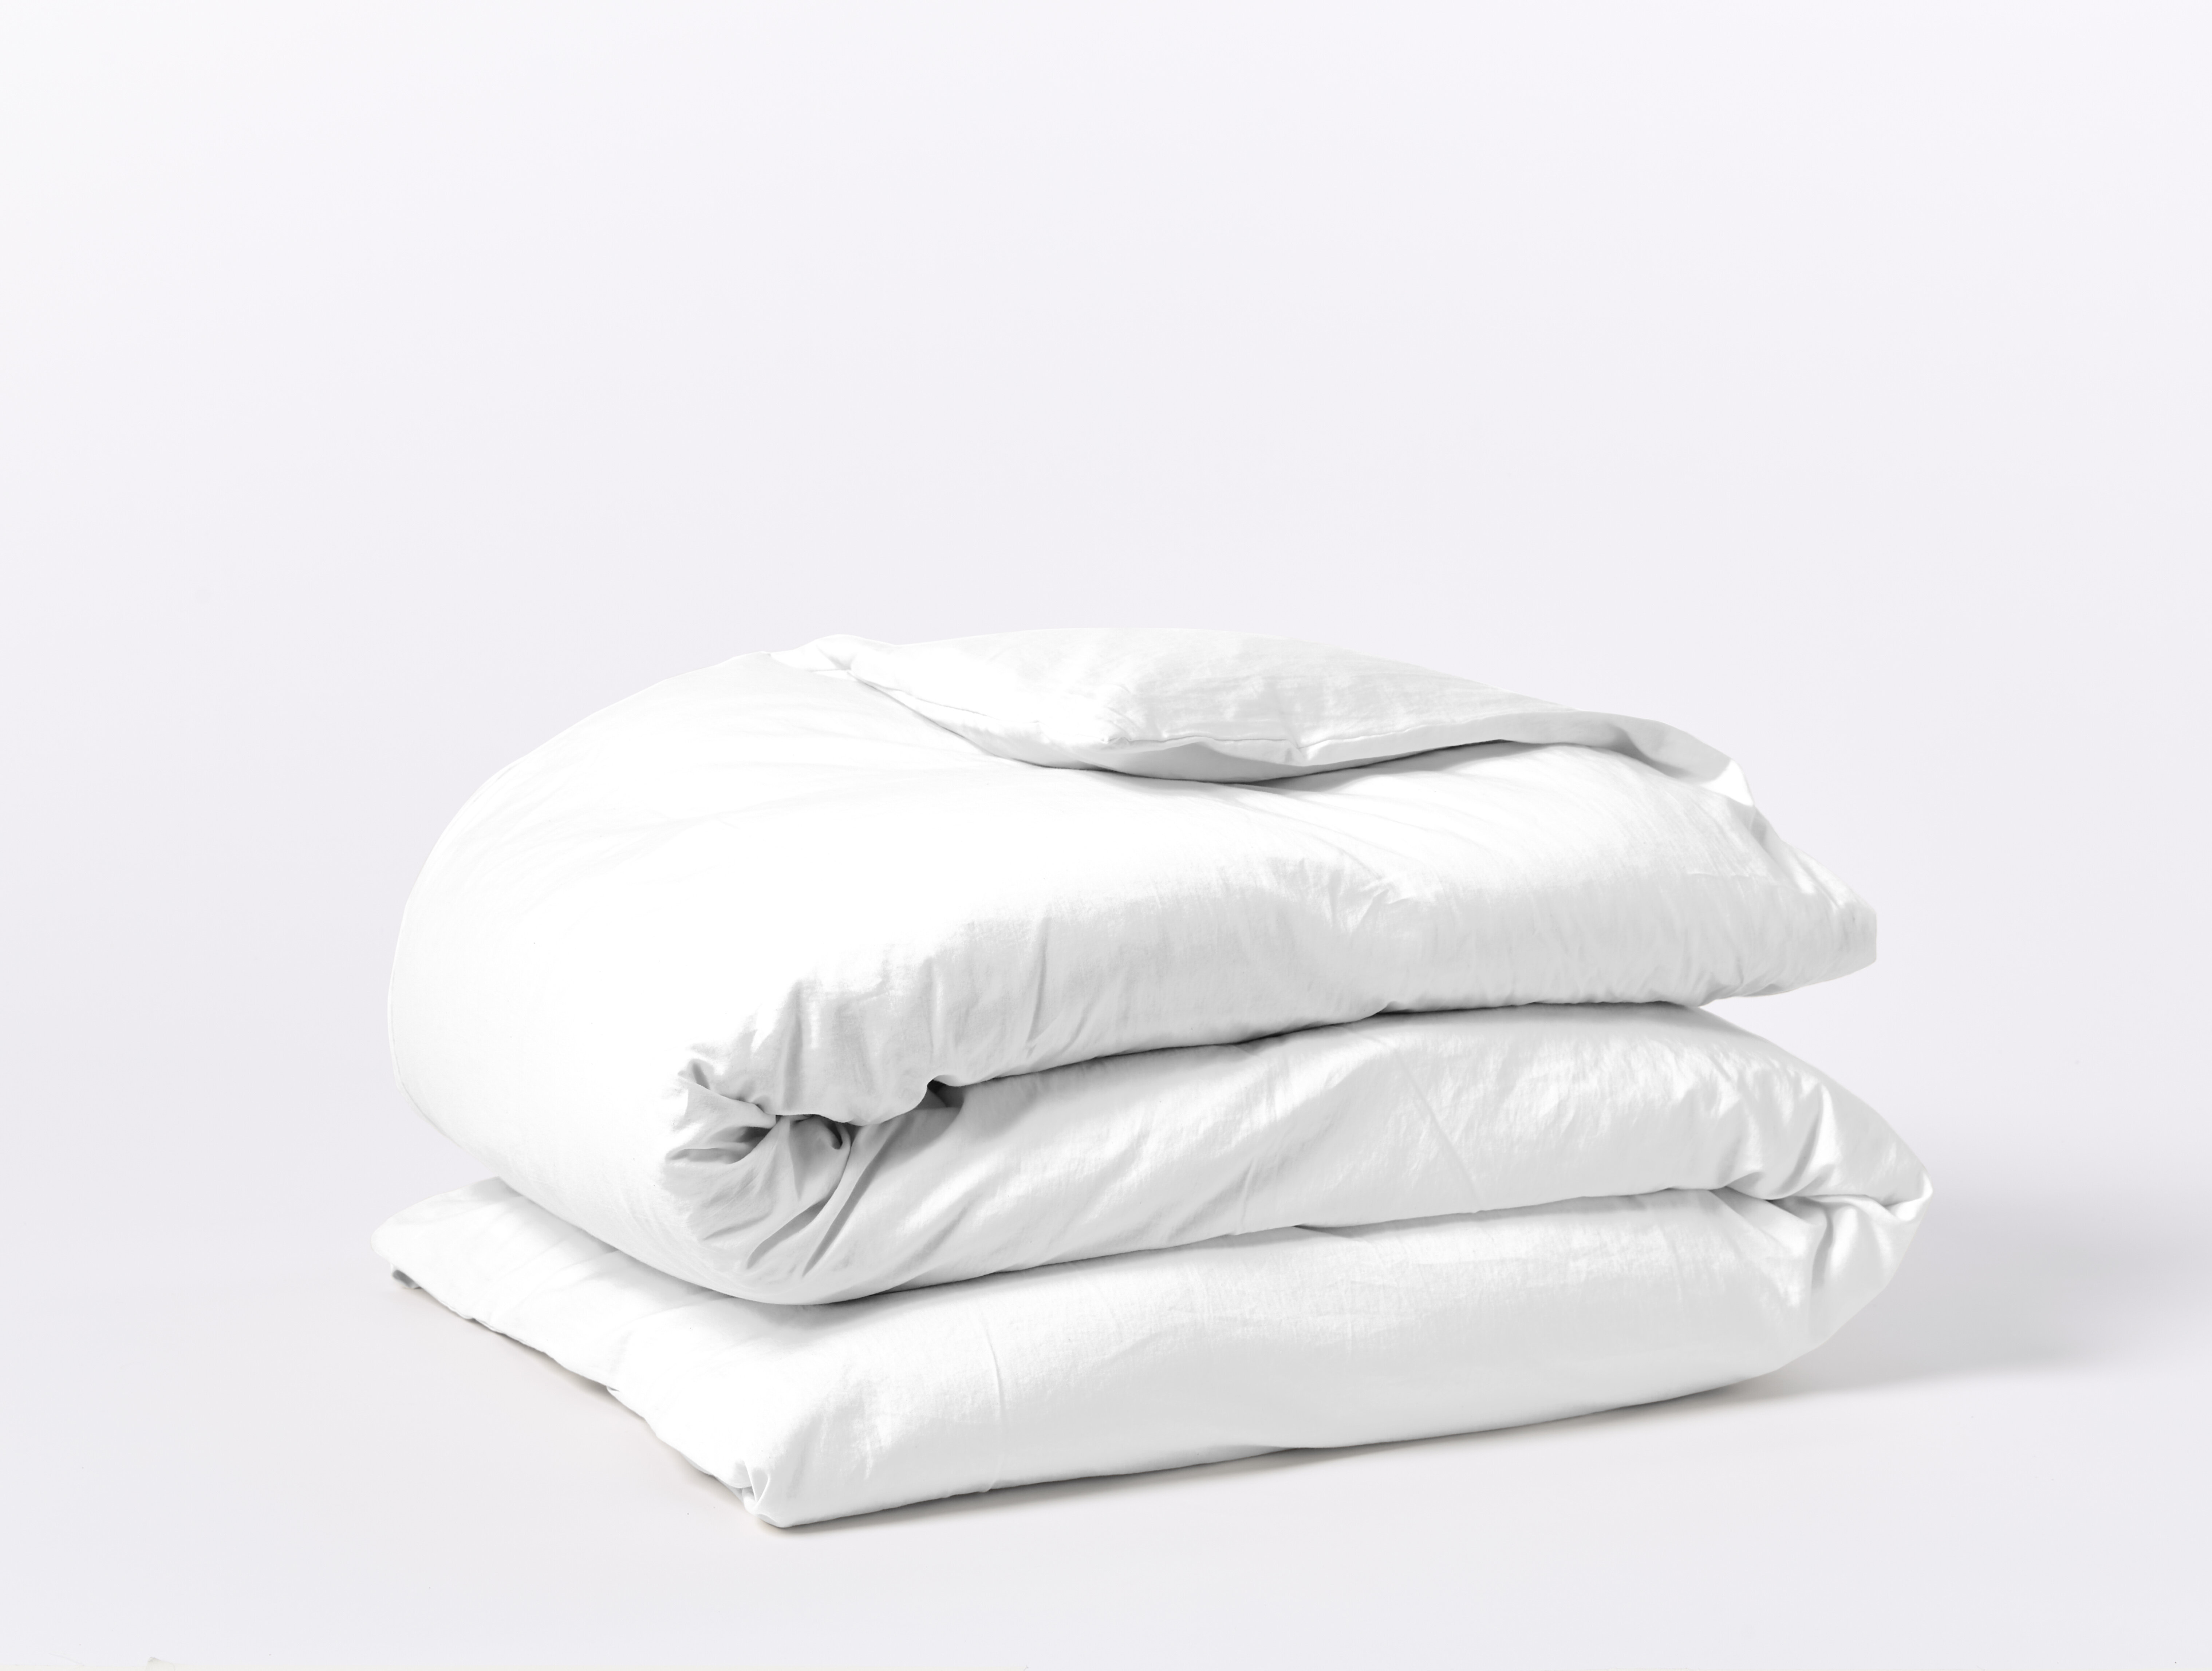 https://assets.wfcdn.com/im/11908582/compr-r85/1873/187306780/relaxed-100-cotton-sateen-duvet-cover.jpg